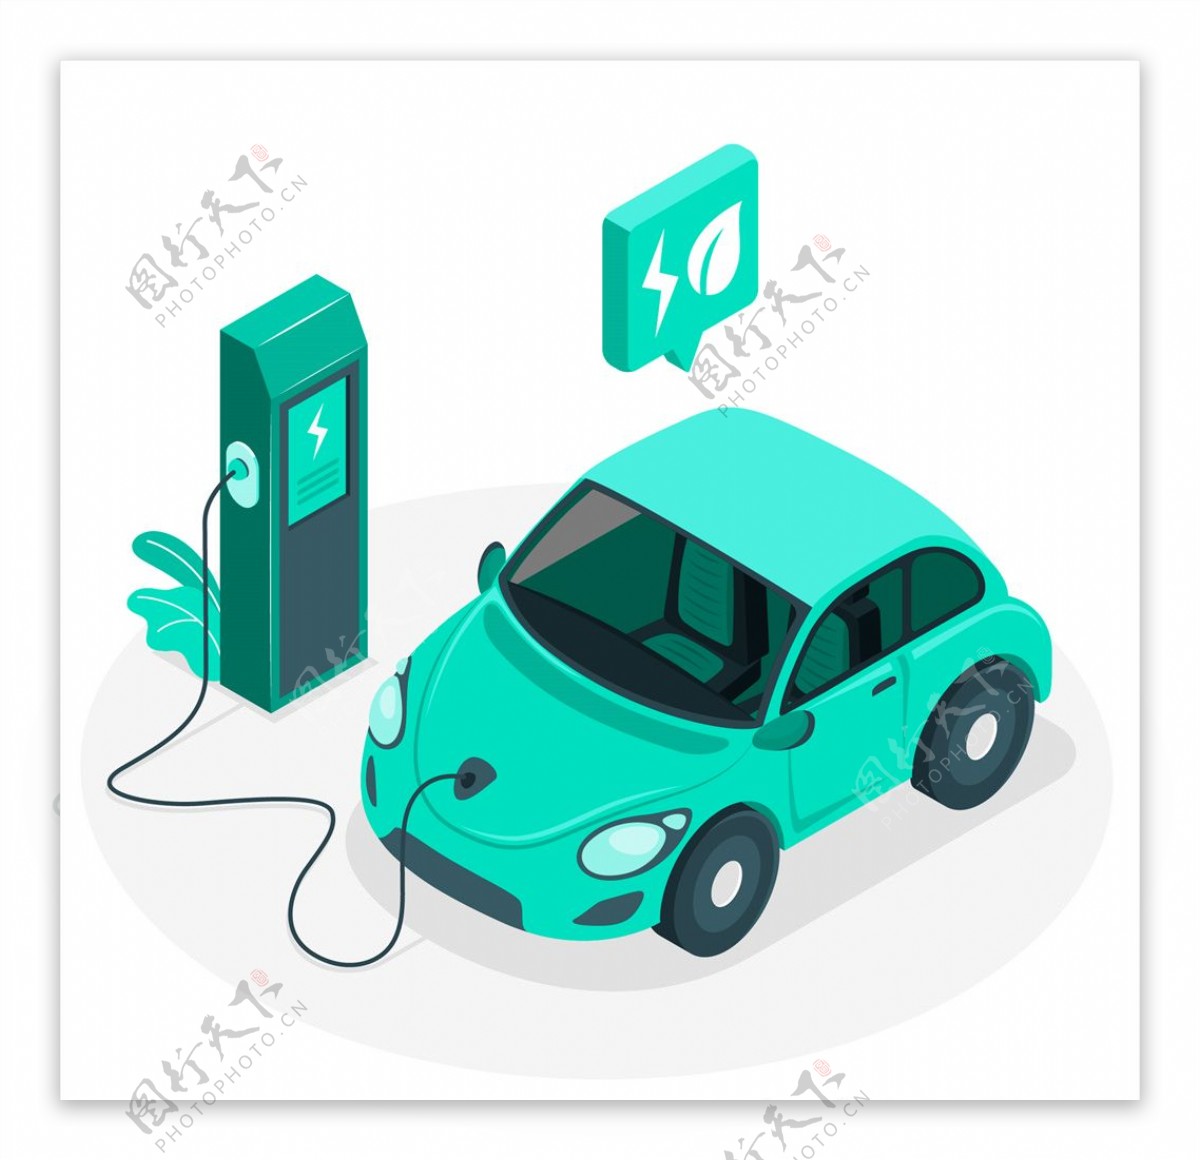 新能源电动汽车充电桩主题插画